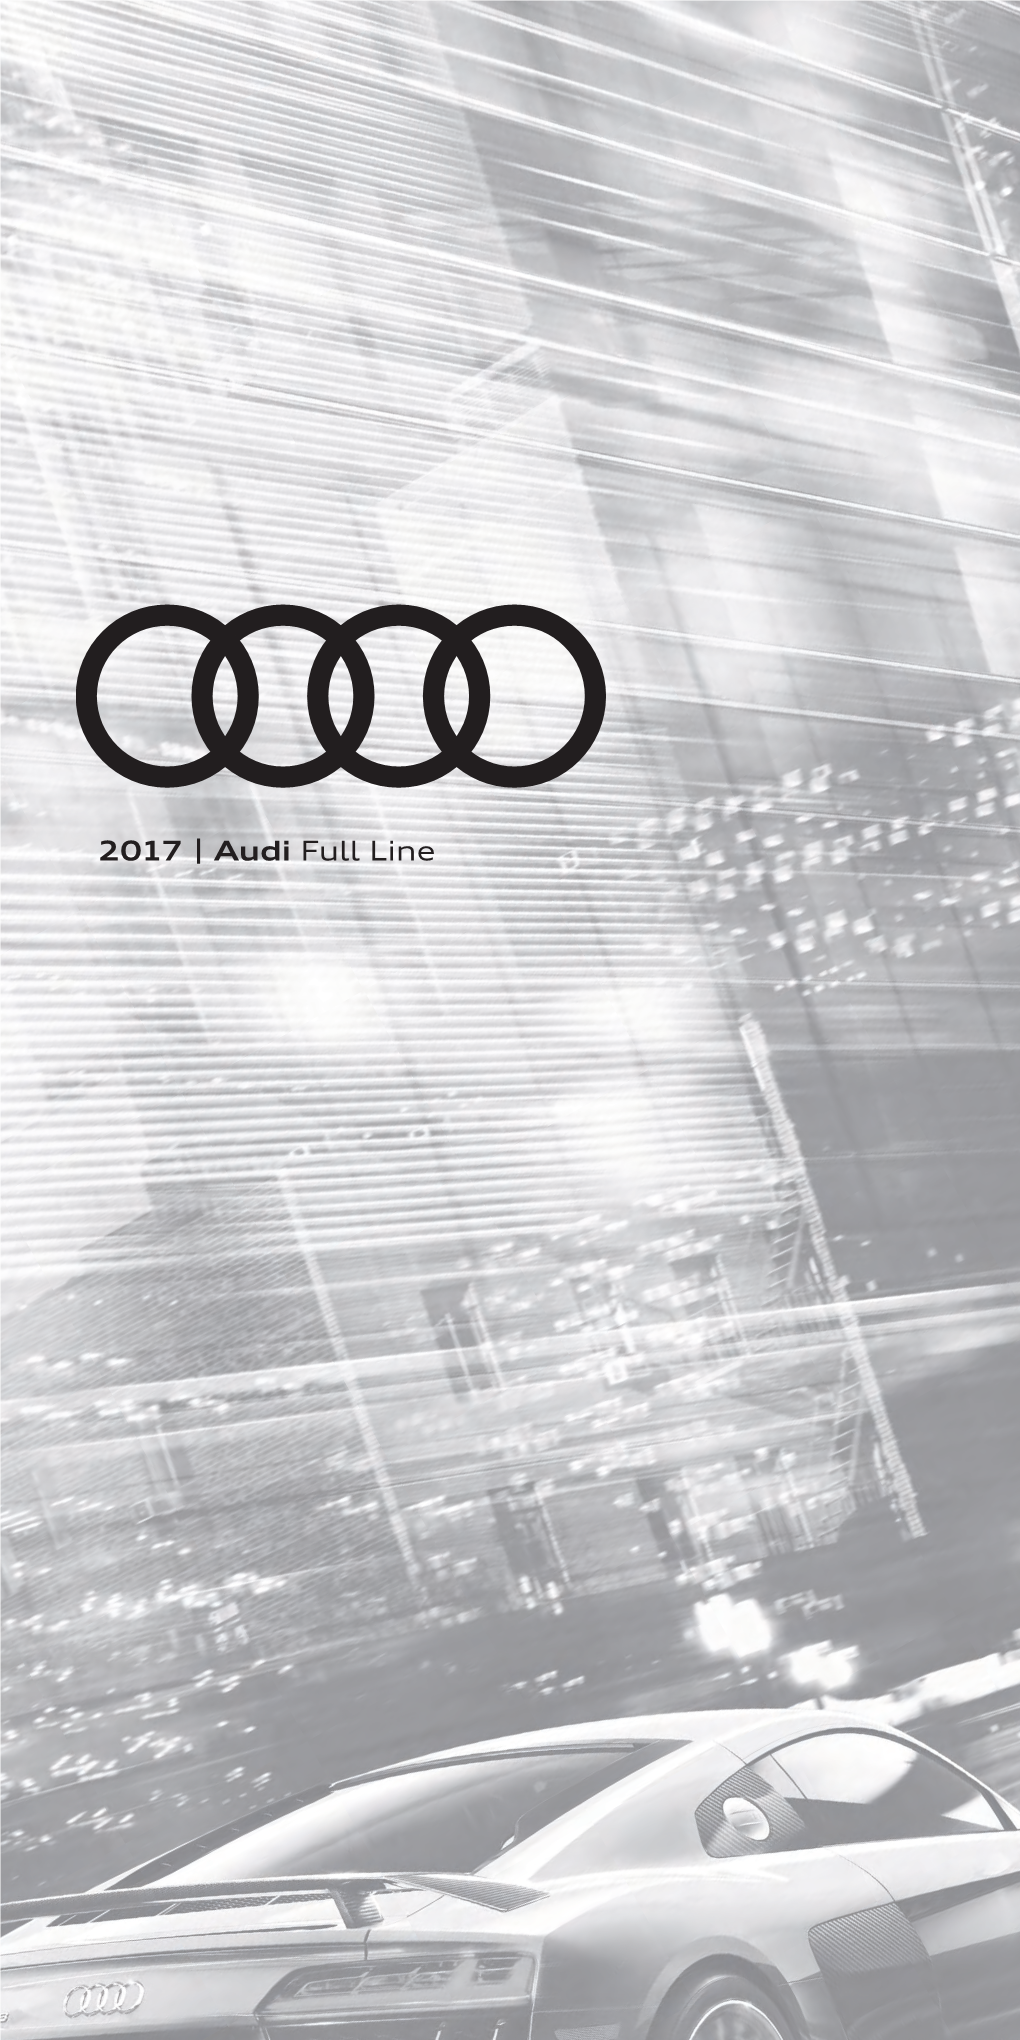 2017 | Audi Full Line Rear Laser Scanner